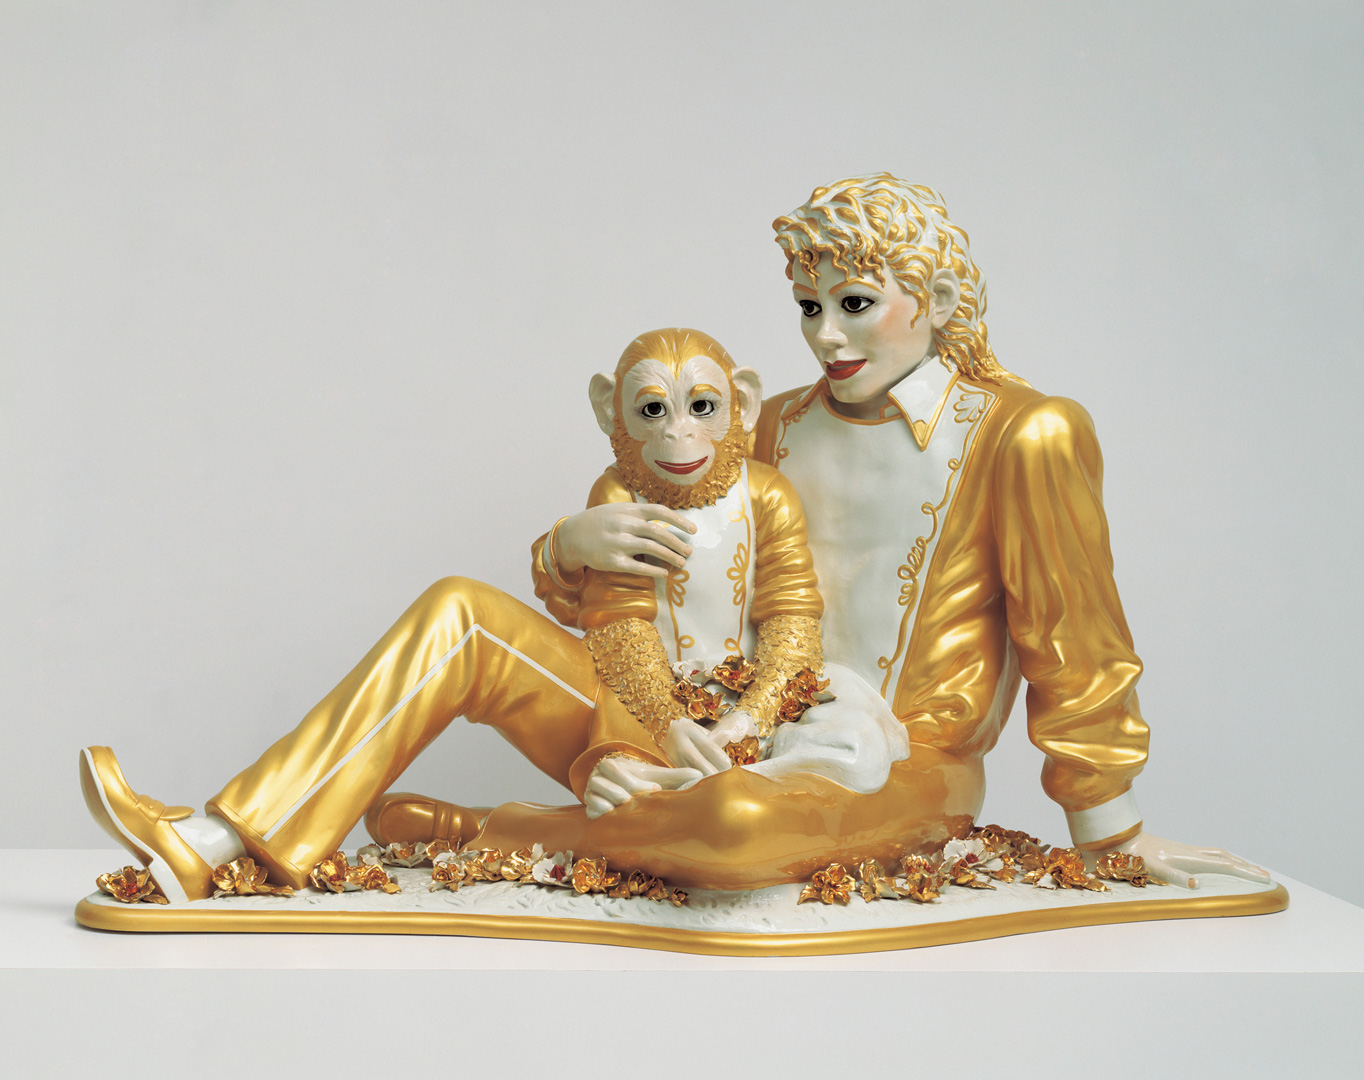 Jeff Koons - Michael Jackson and Bubbles, 1988, porcelain